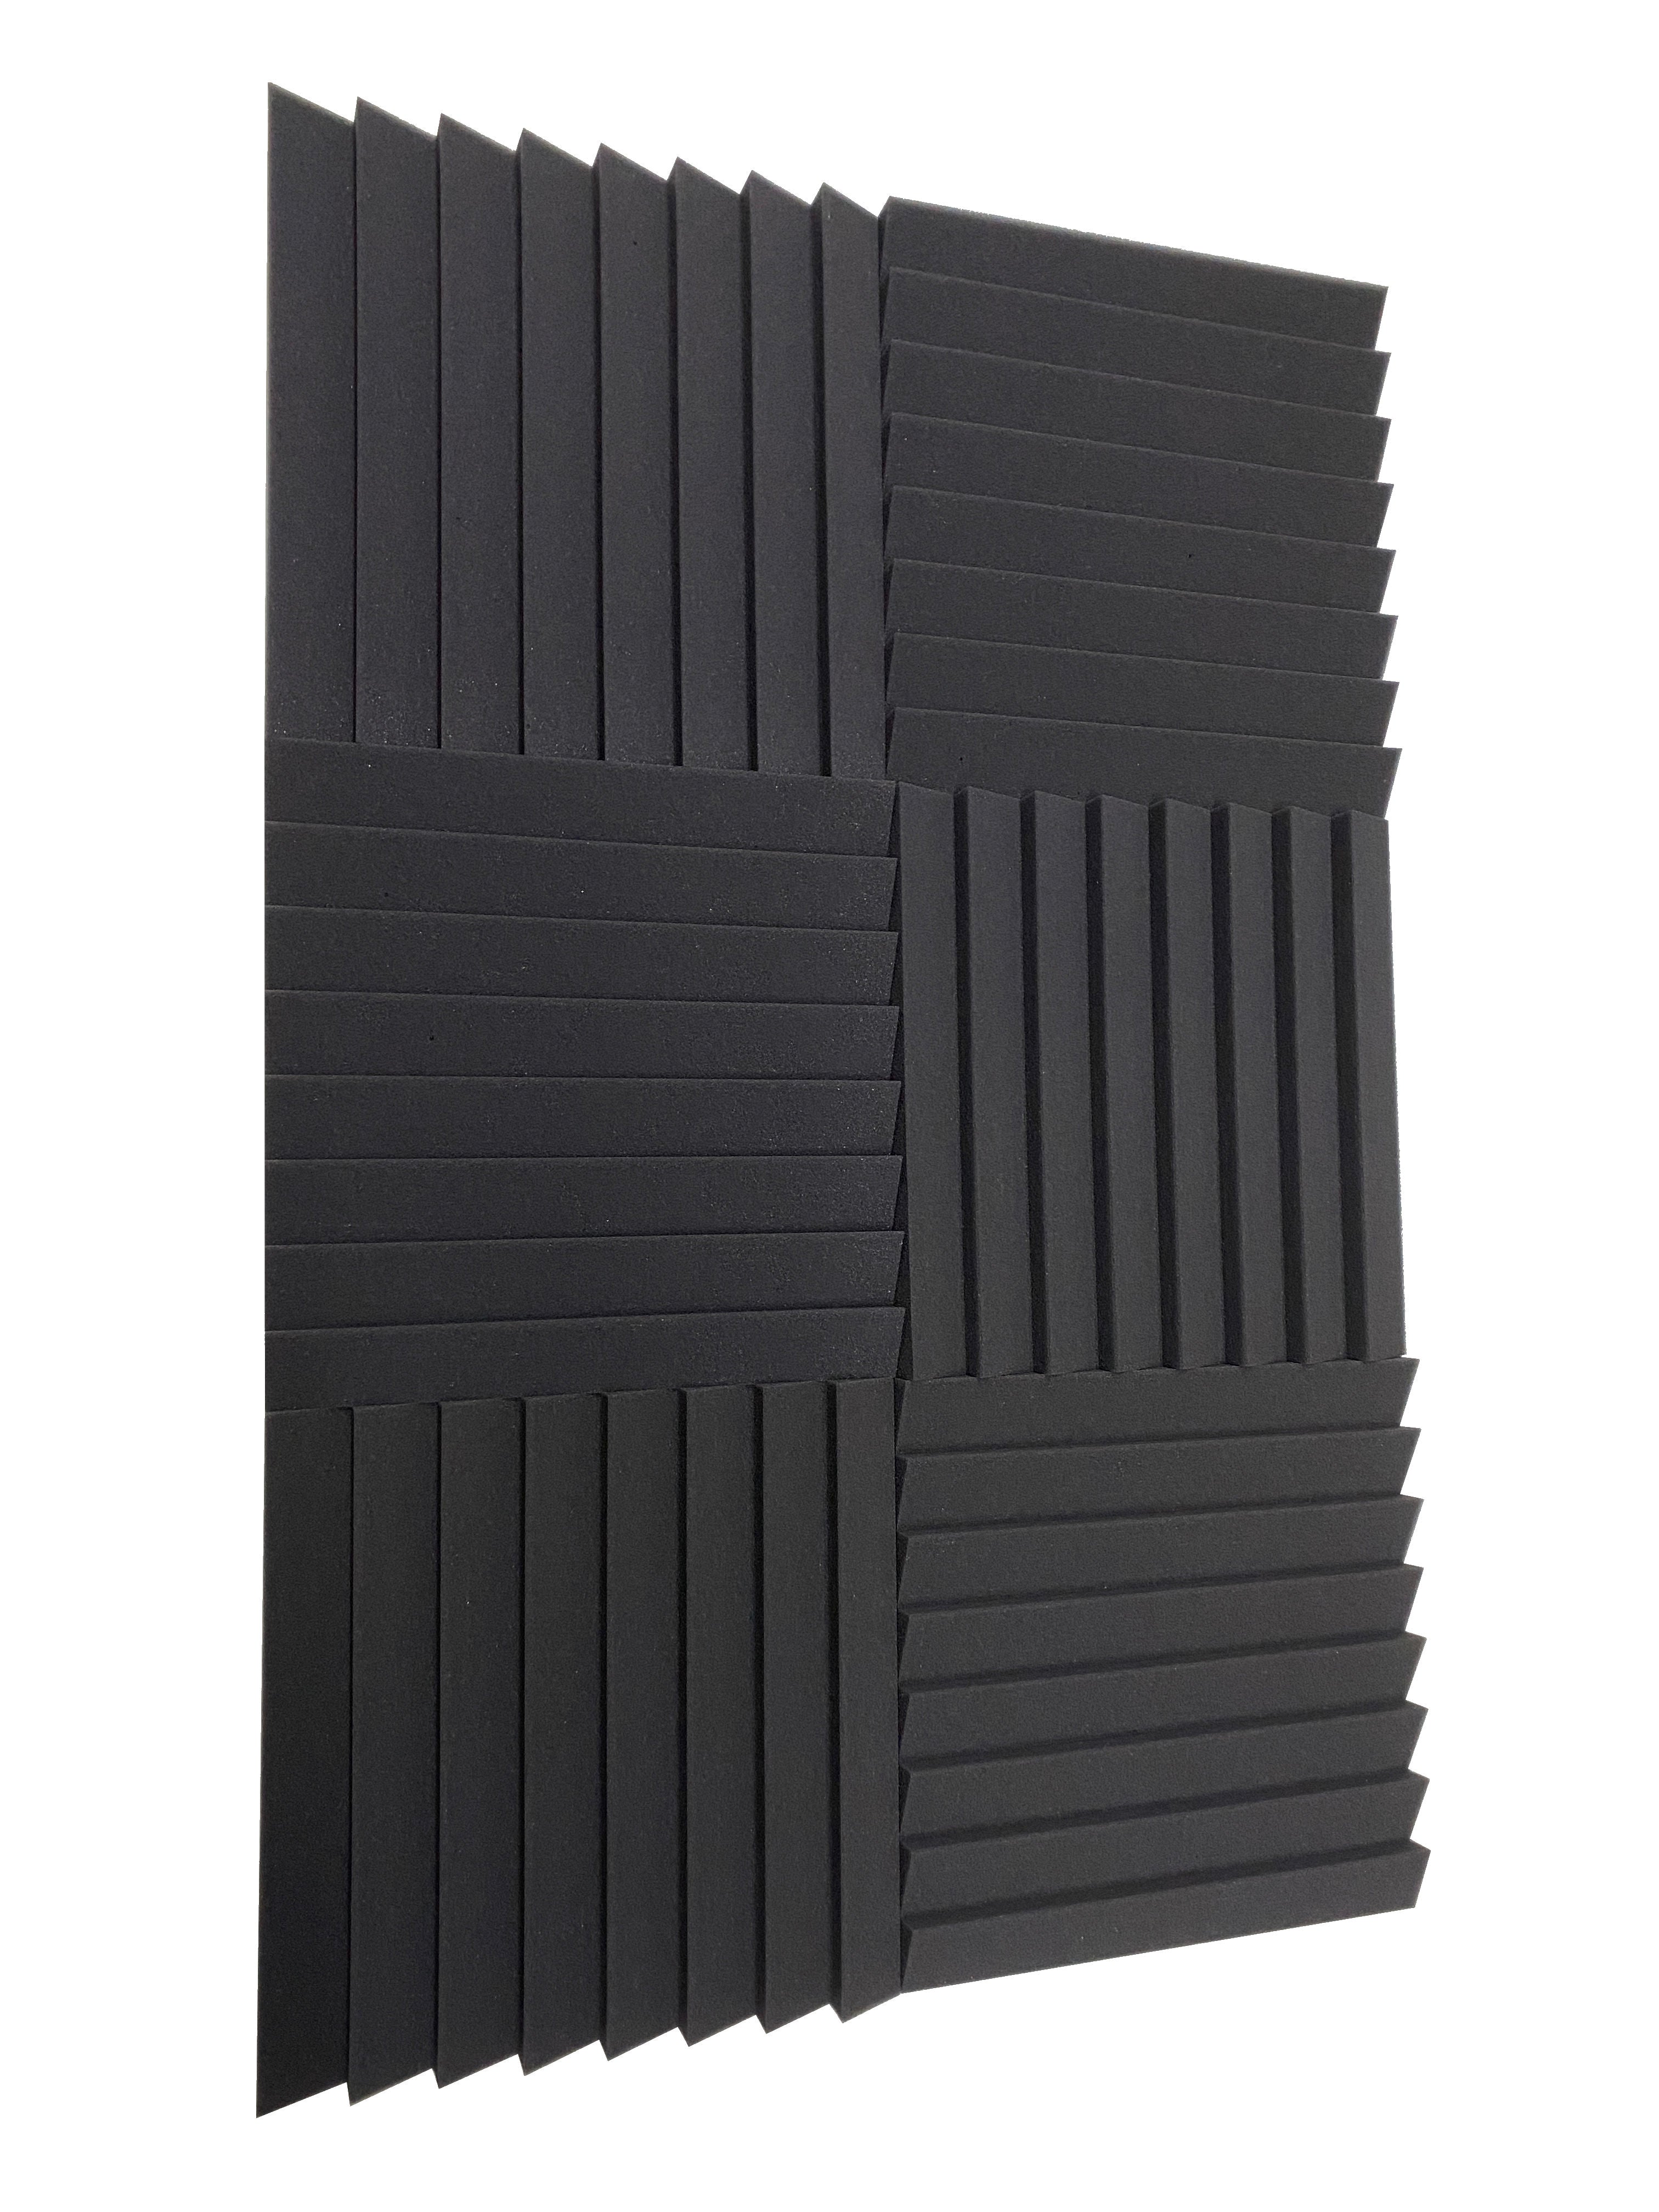 Sawtooth 12" Acoustic Studio Foam Tile Pack – 24 Tiles, 2.2qm Coverage